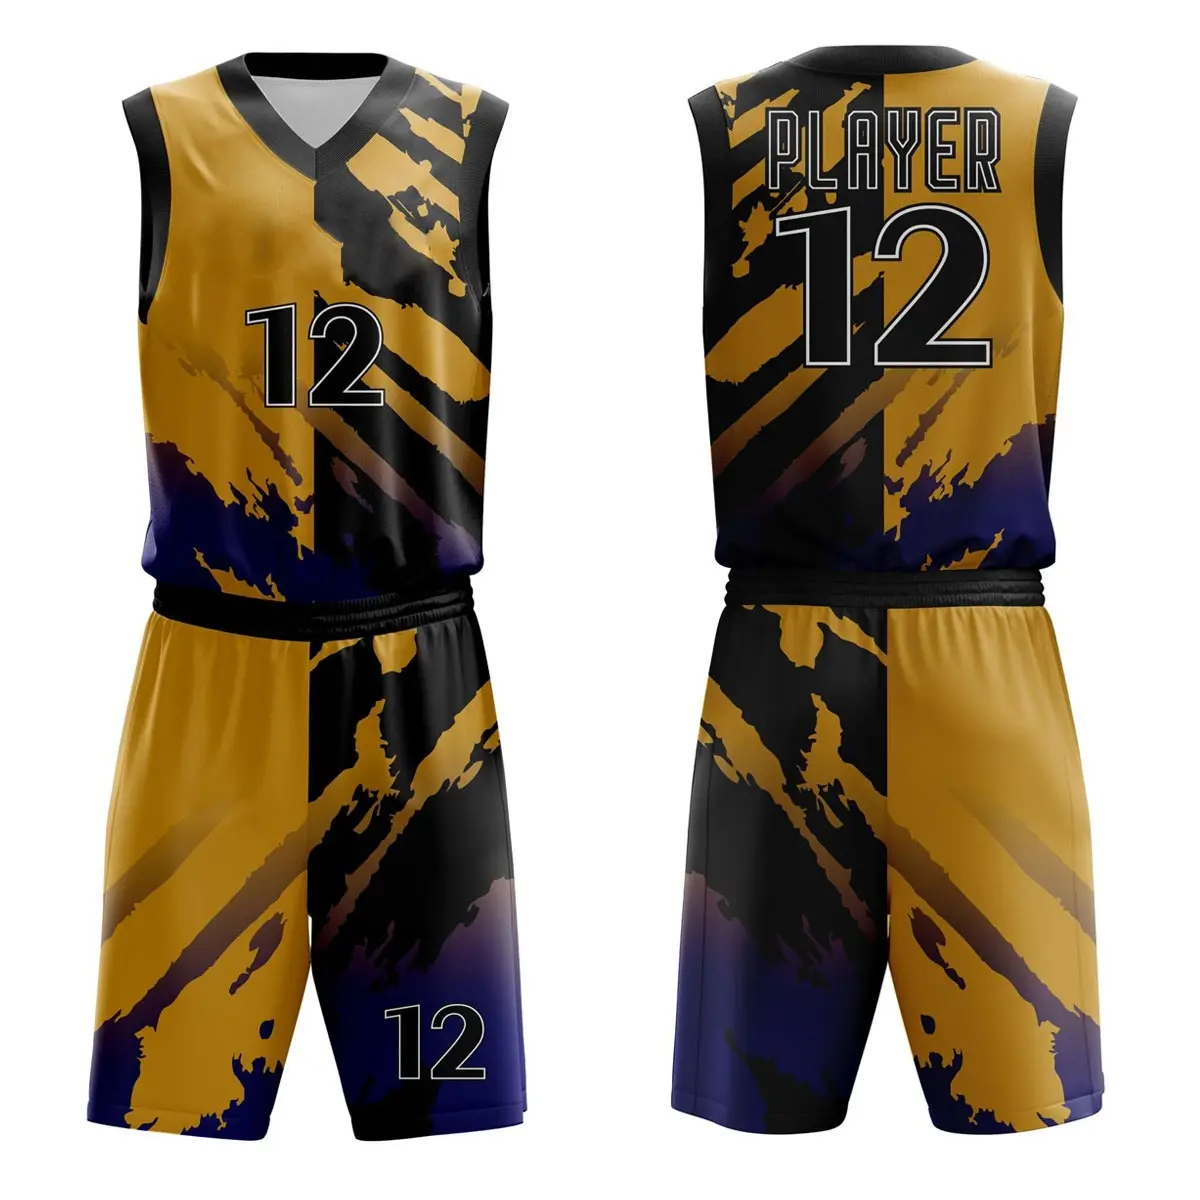 Uniforme de baloncesto de Material 2022 poliéster, ropa deportiva personalizada, su propio diseño, peso ligero, alta calidad